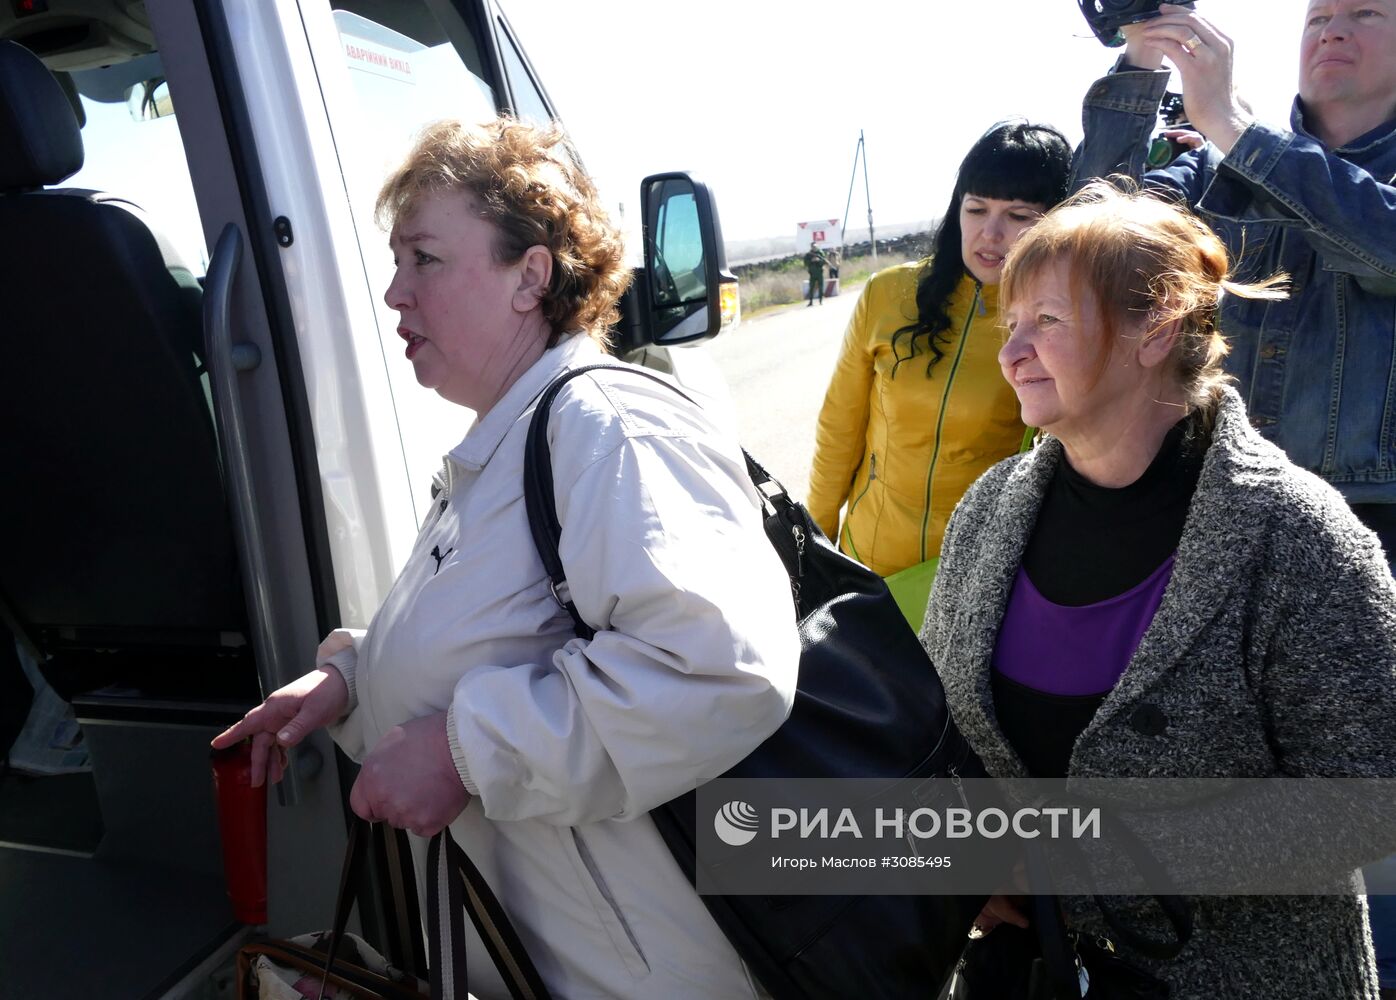 Начало процесса верификации военнопленных на Донбассе